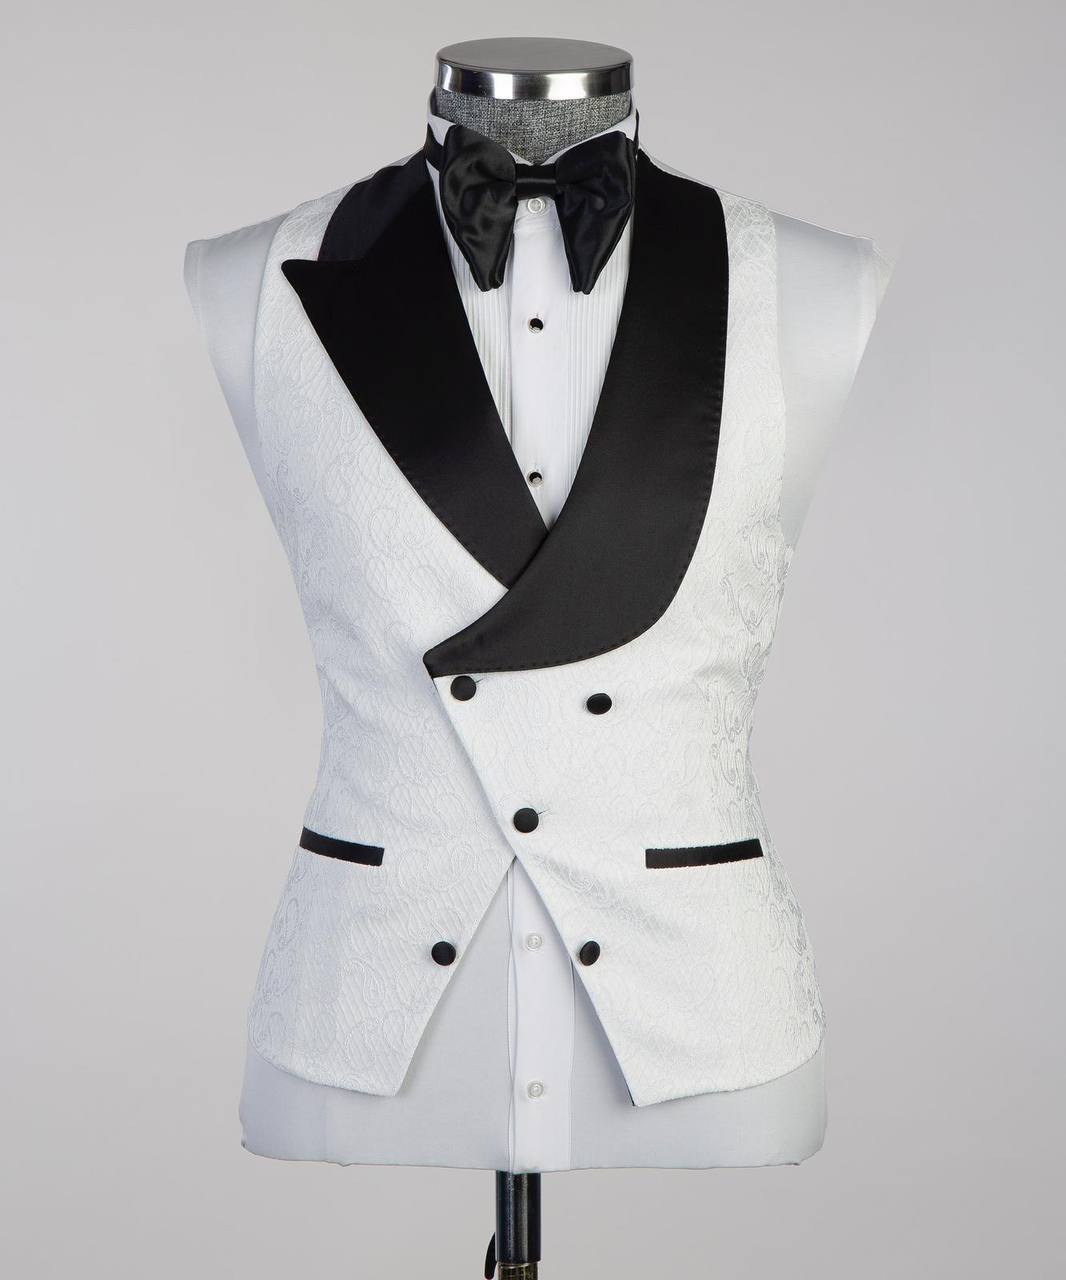 Men's White Tuxedo-Asymmetrical Black Satin Lapel